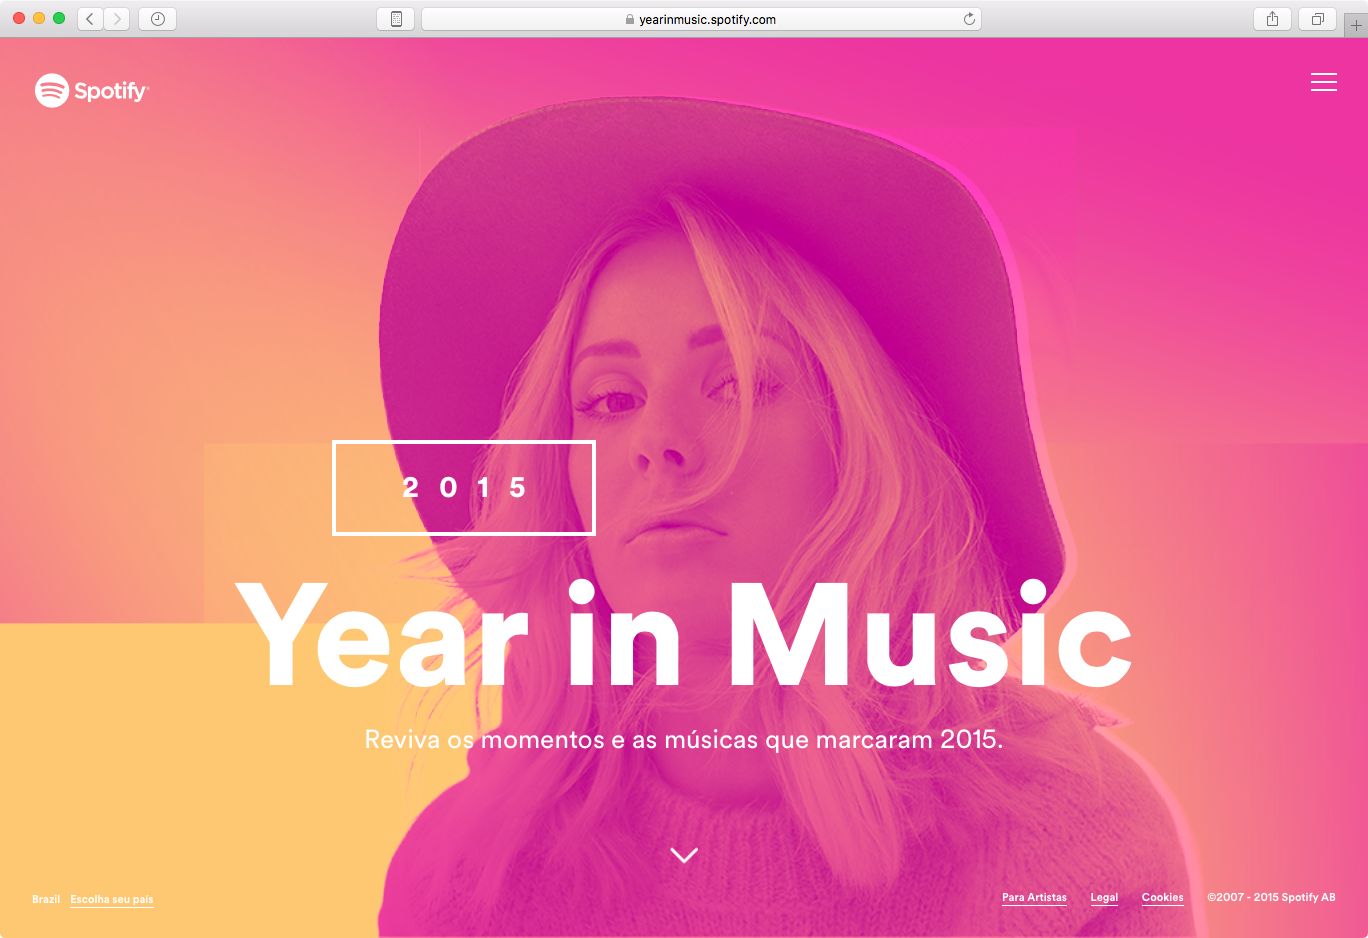 O que você mais ouviu no Spotify em 2015?